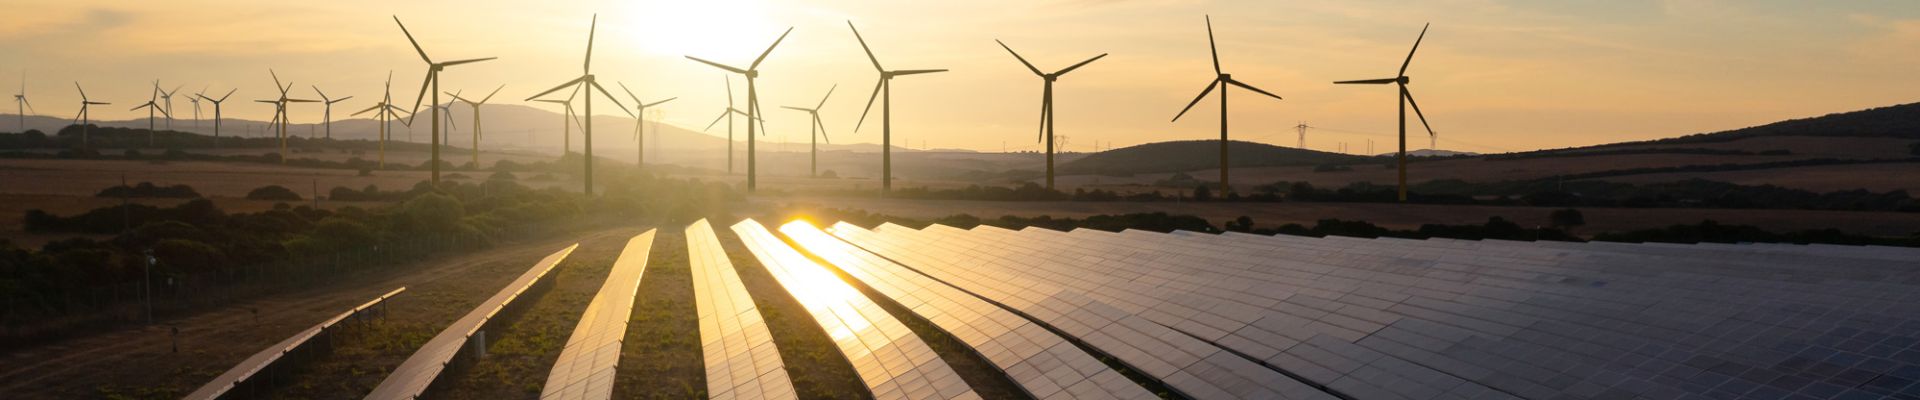 Leistungsprognosen für Wind- und Solarenergieanlagen